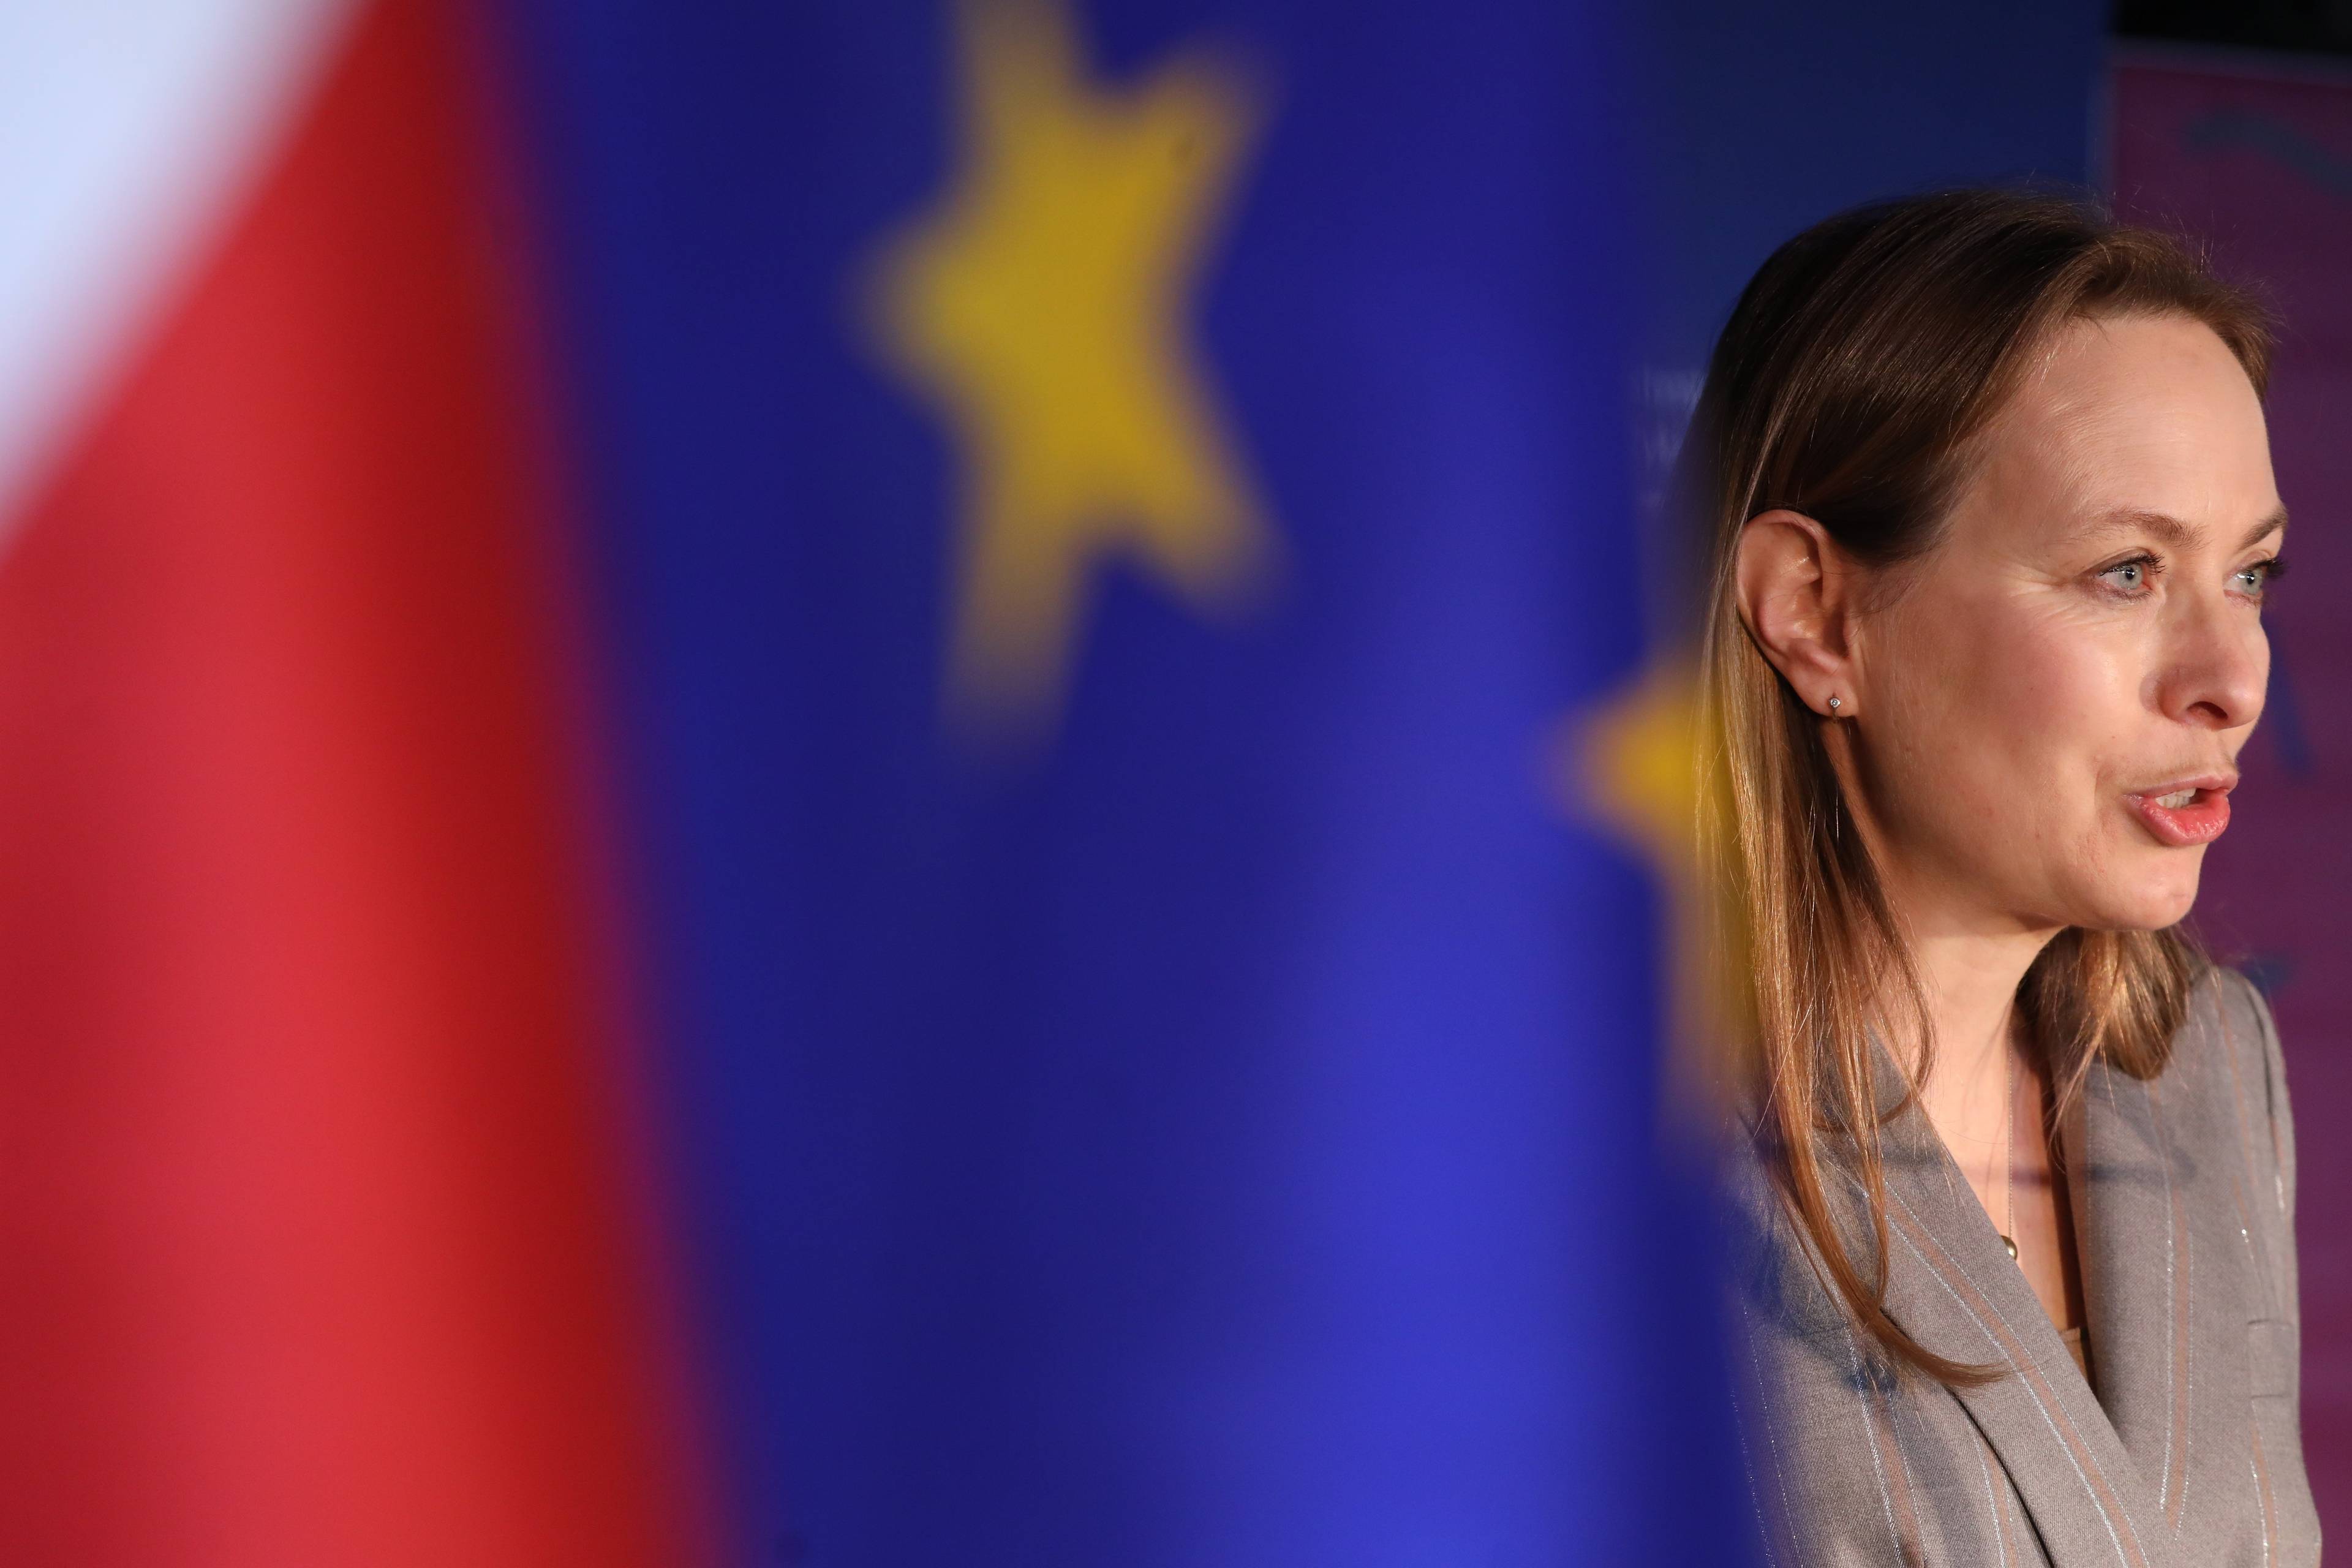 Kobieta w jasnym żakiecie na tle flag UE i Polski